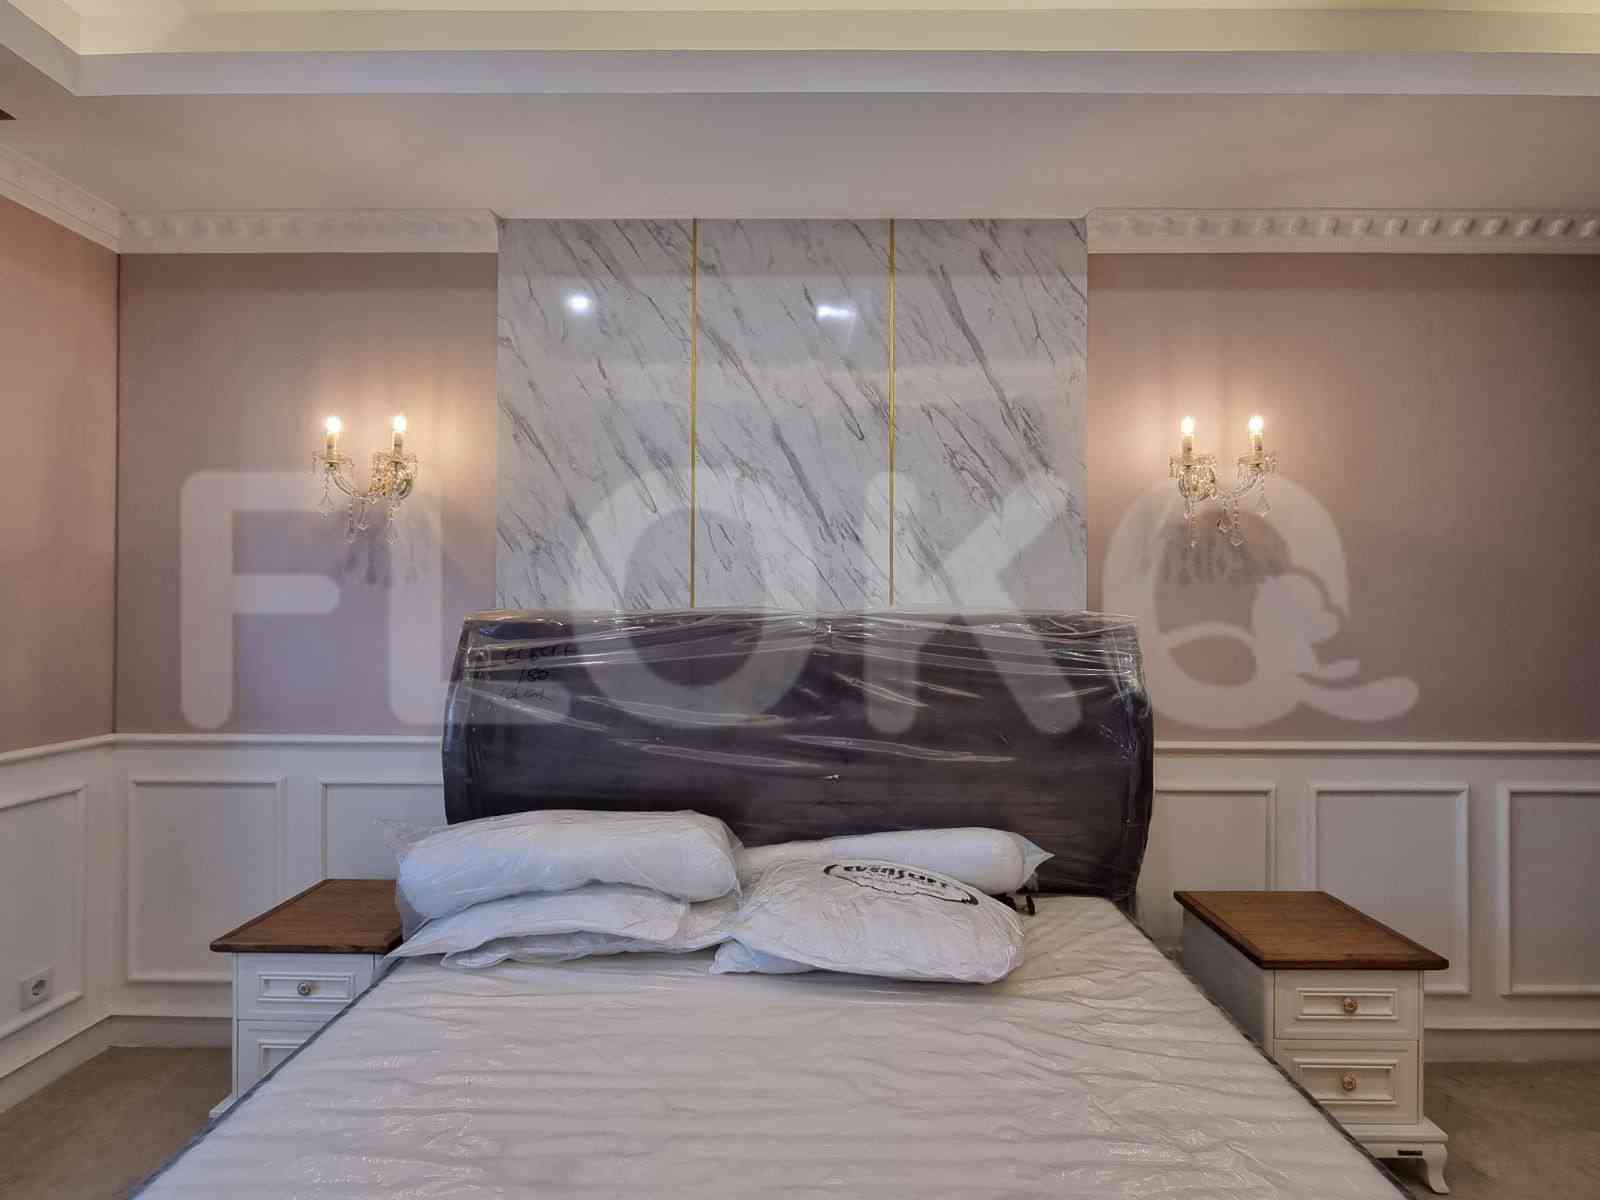 2 Bedroom on 17th Floor for Rent in Pondok Indah Residence - fpo3b2 3